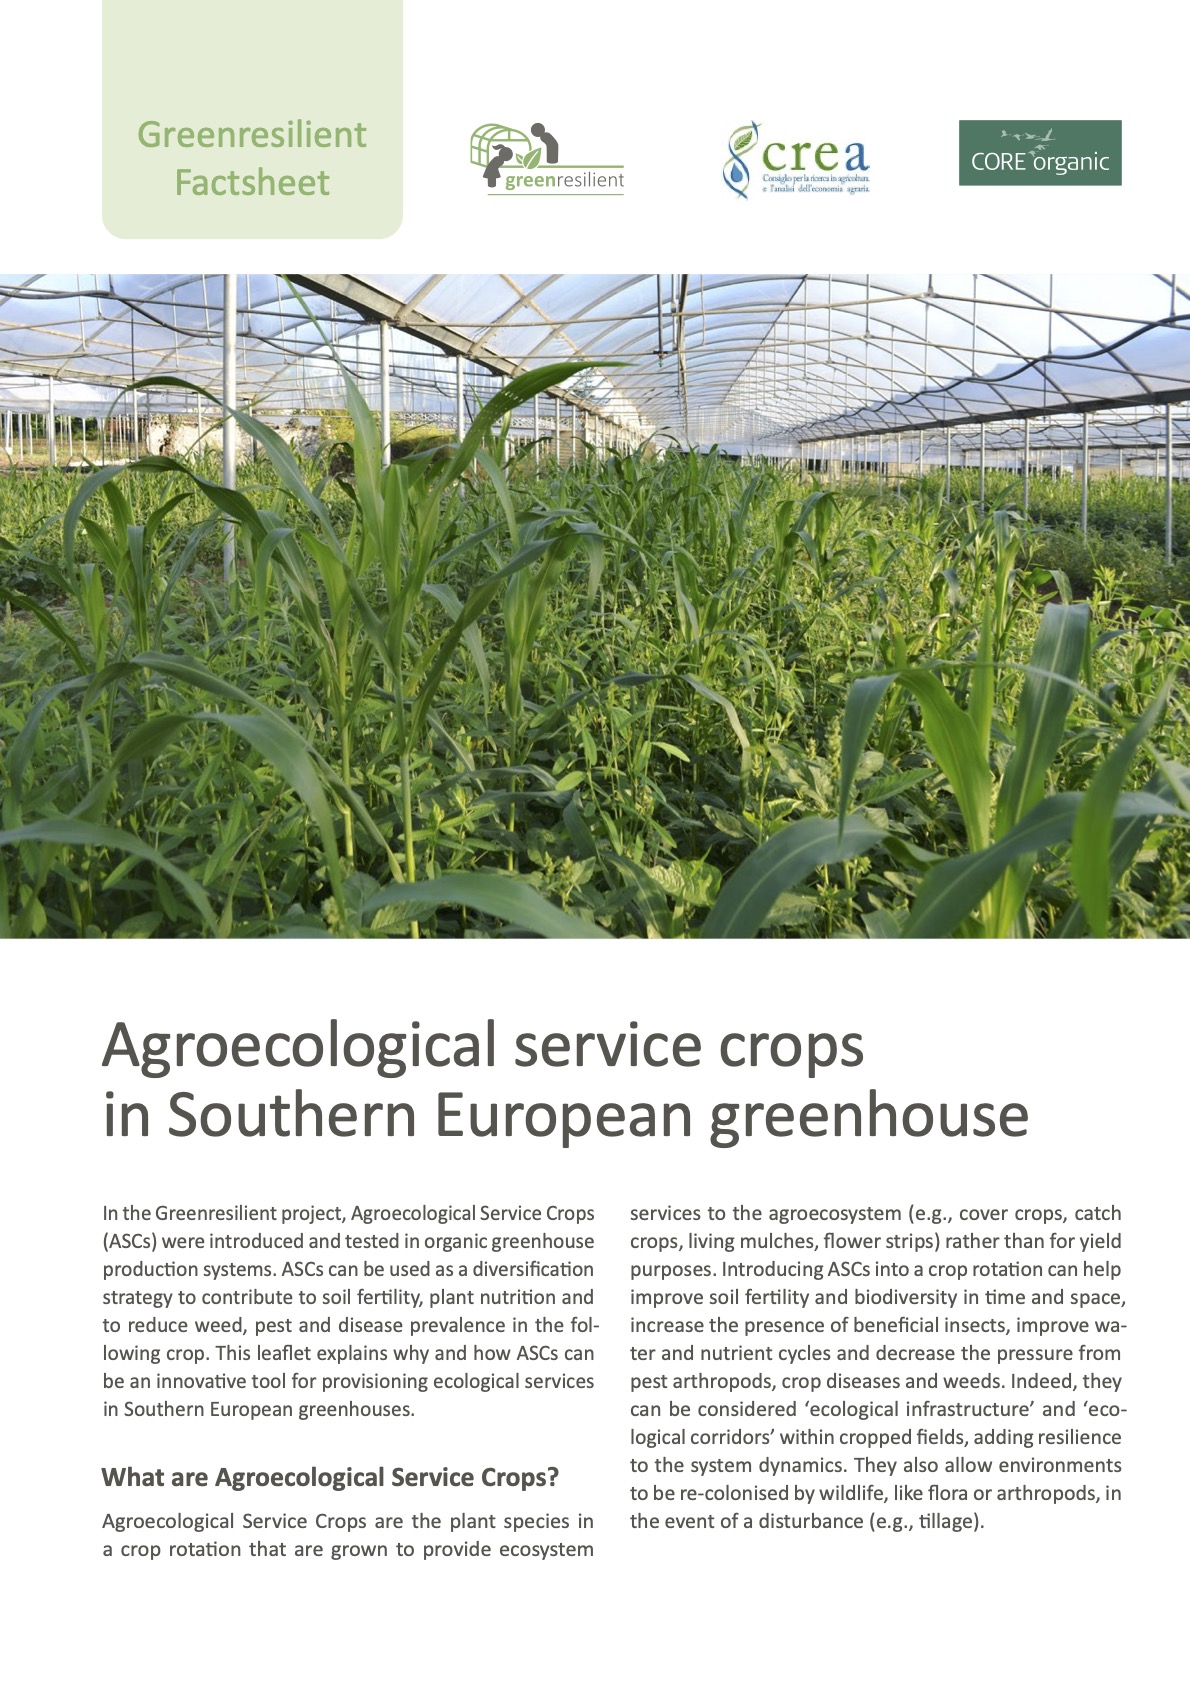 Култури за агроекологично обслужване в южноевропейска оранжерия (информационен лист за Greenresilient)